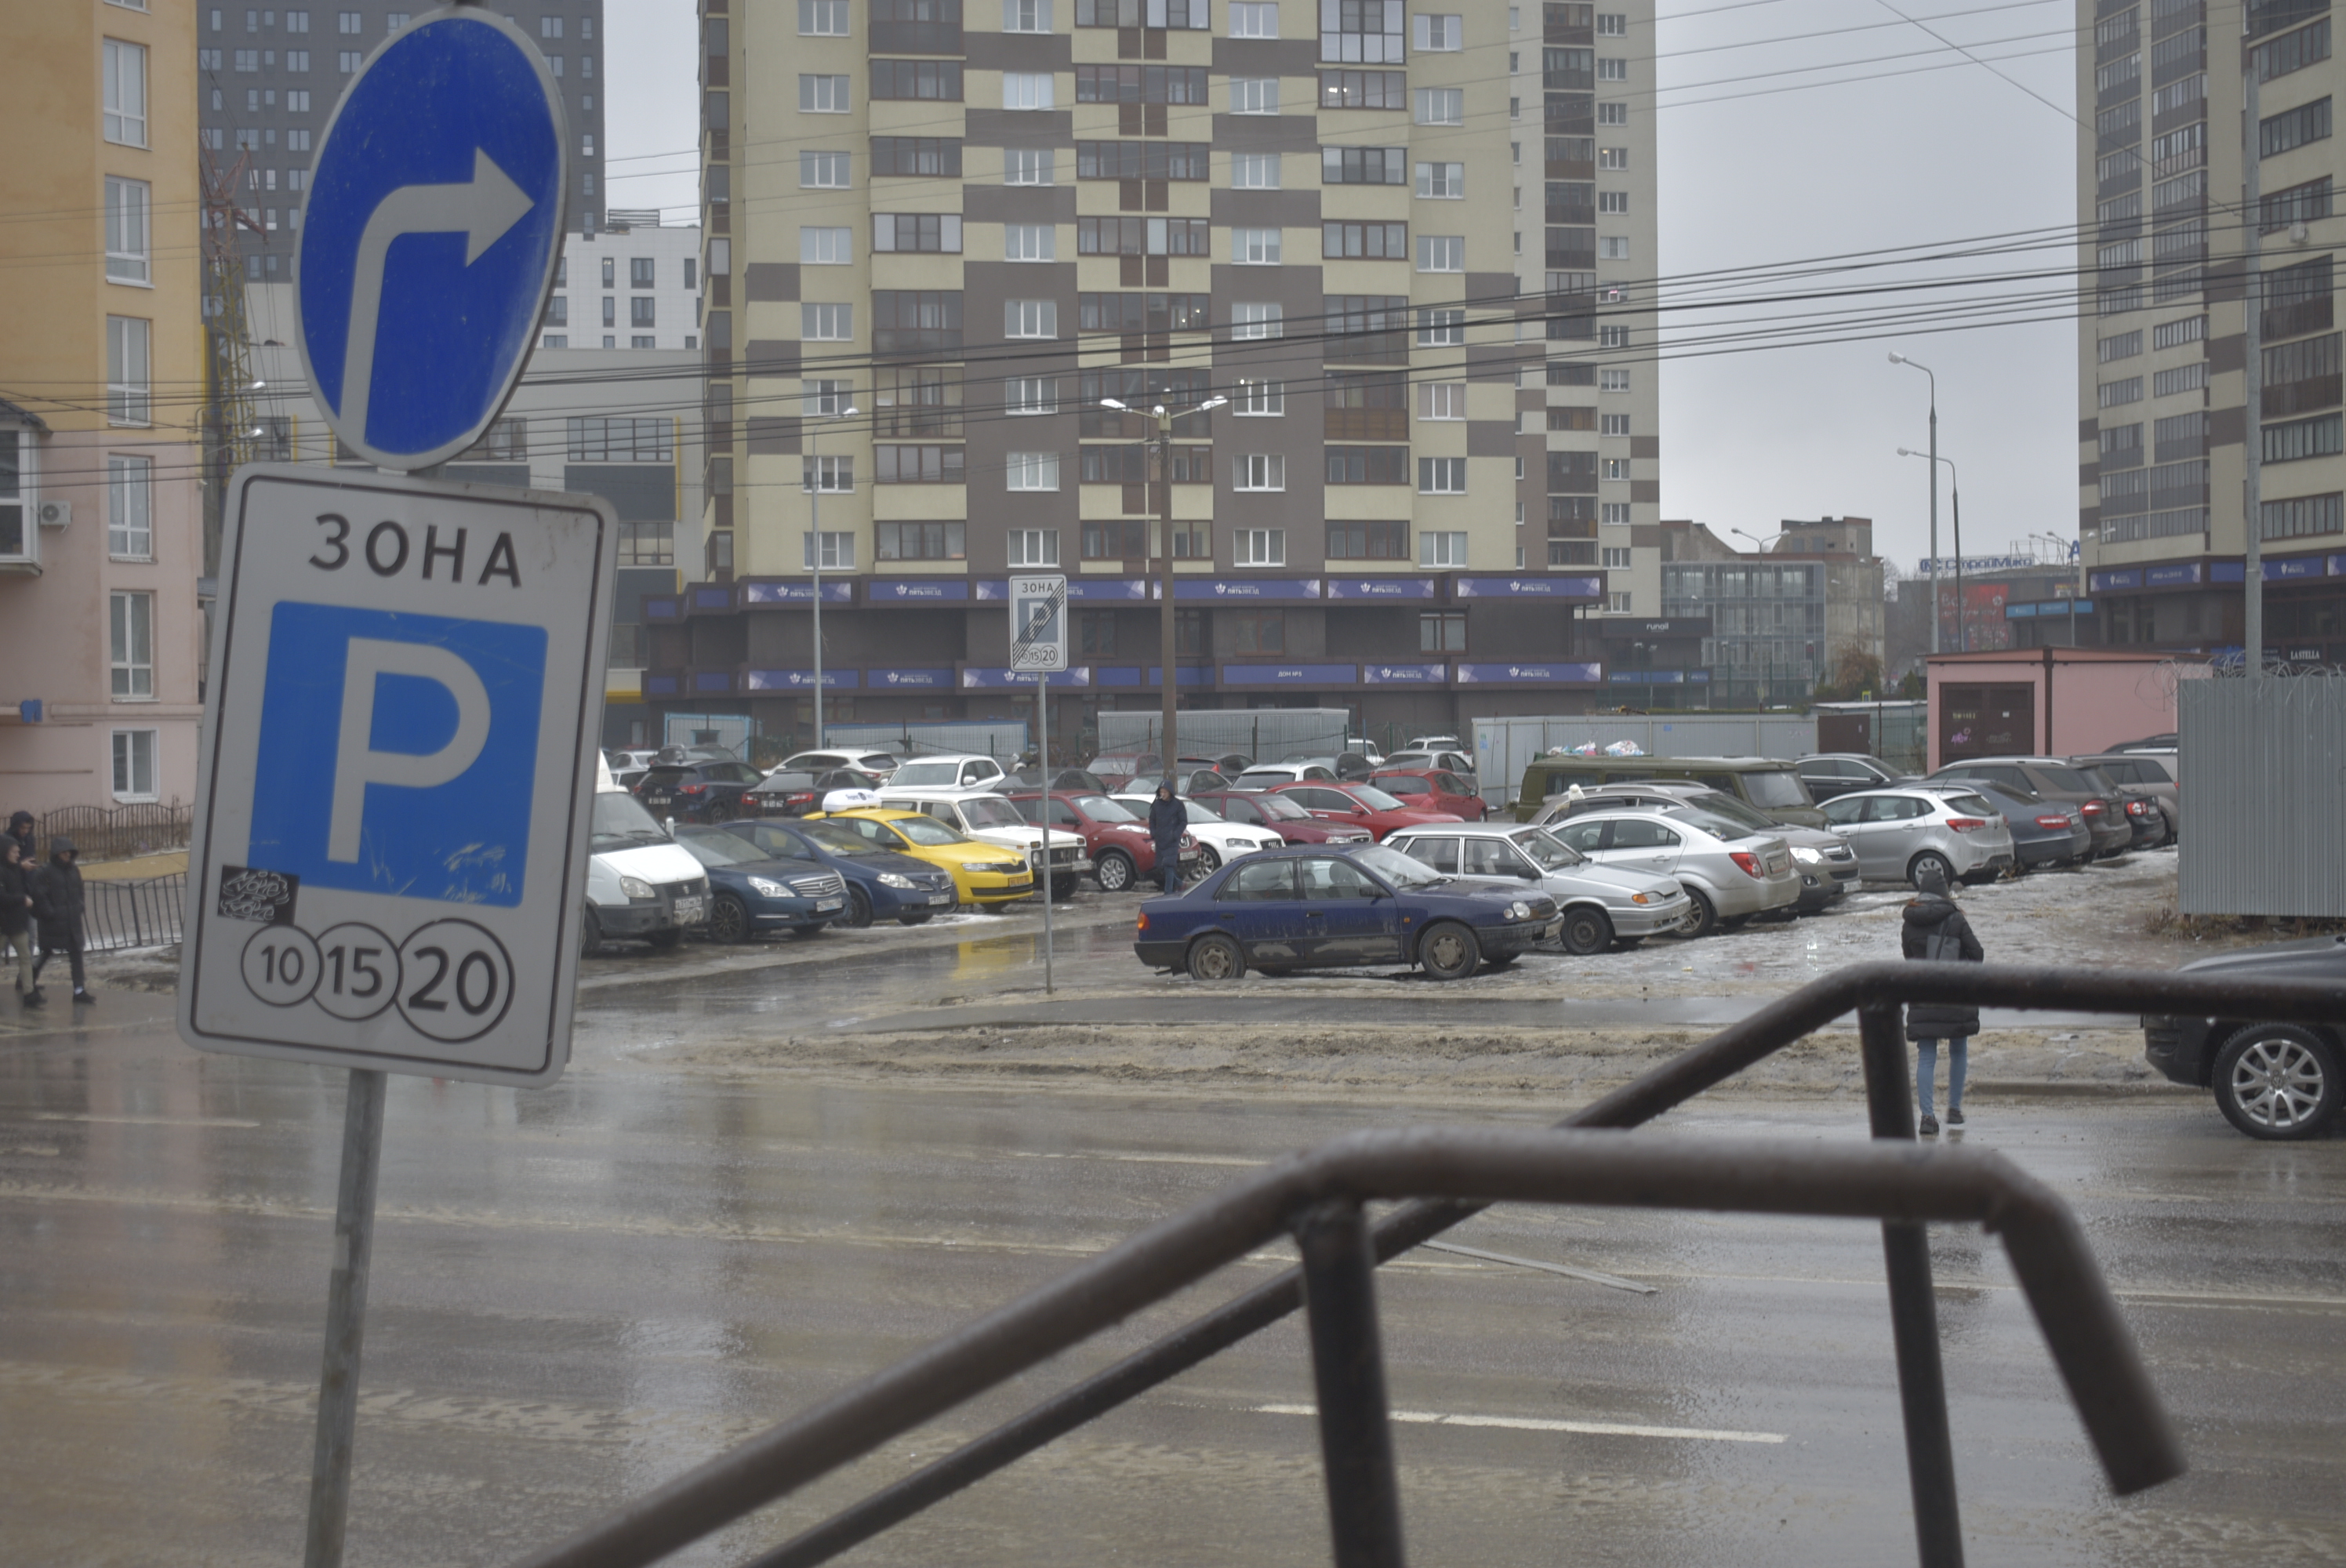 Какими методами можно решить проблему с парковками в Воронеже? - фото 1